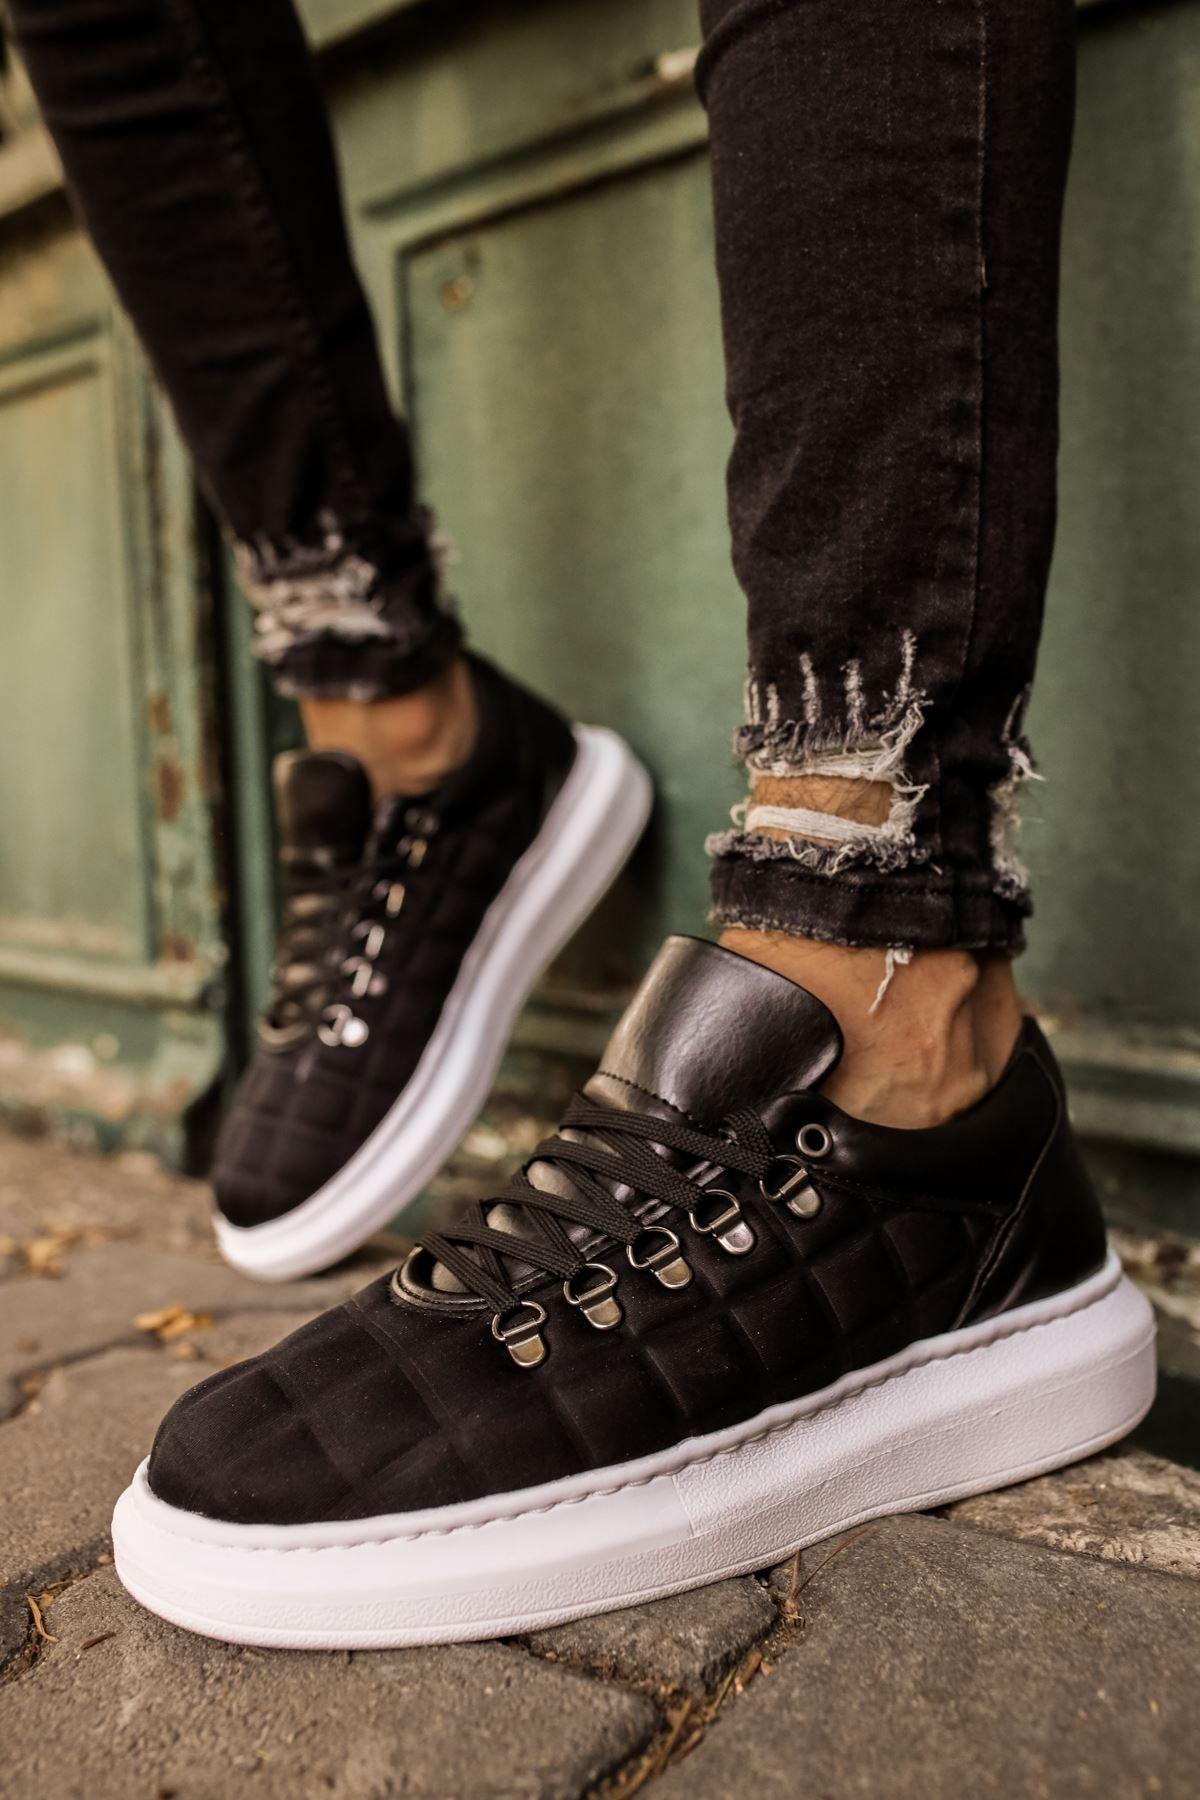 CH022 Checkered BT Men's Sneaker Shoes BLACK - STREET MODE ™